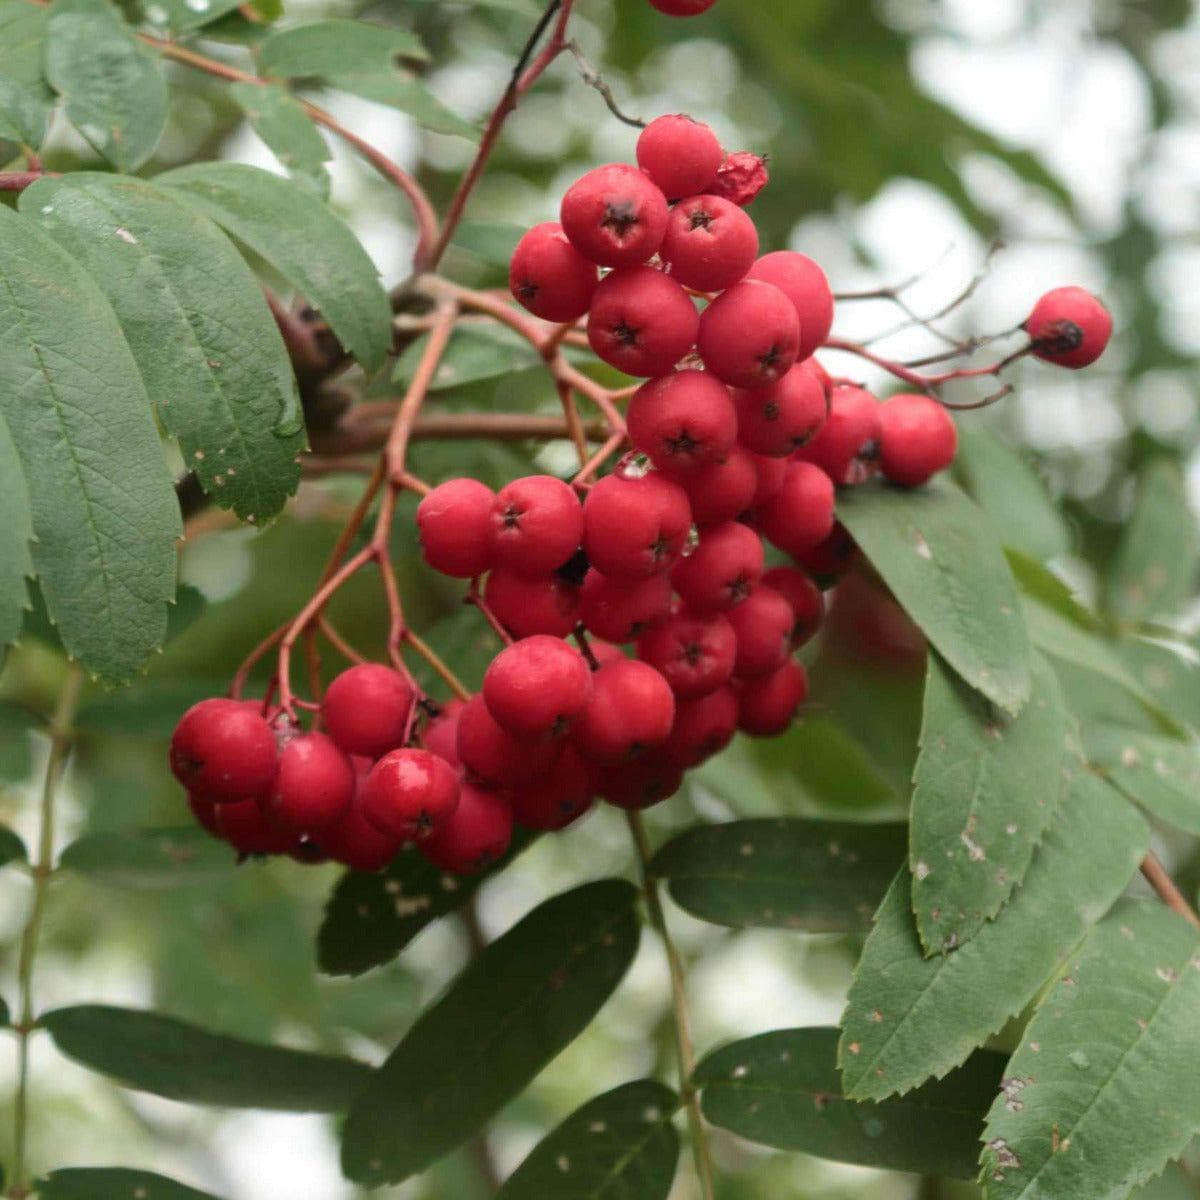 Rubinovaja Kreuzung kaufen - und Mehlbeere-Birnbaum pflanzen